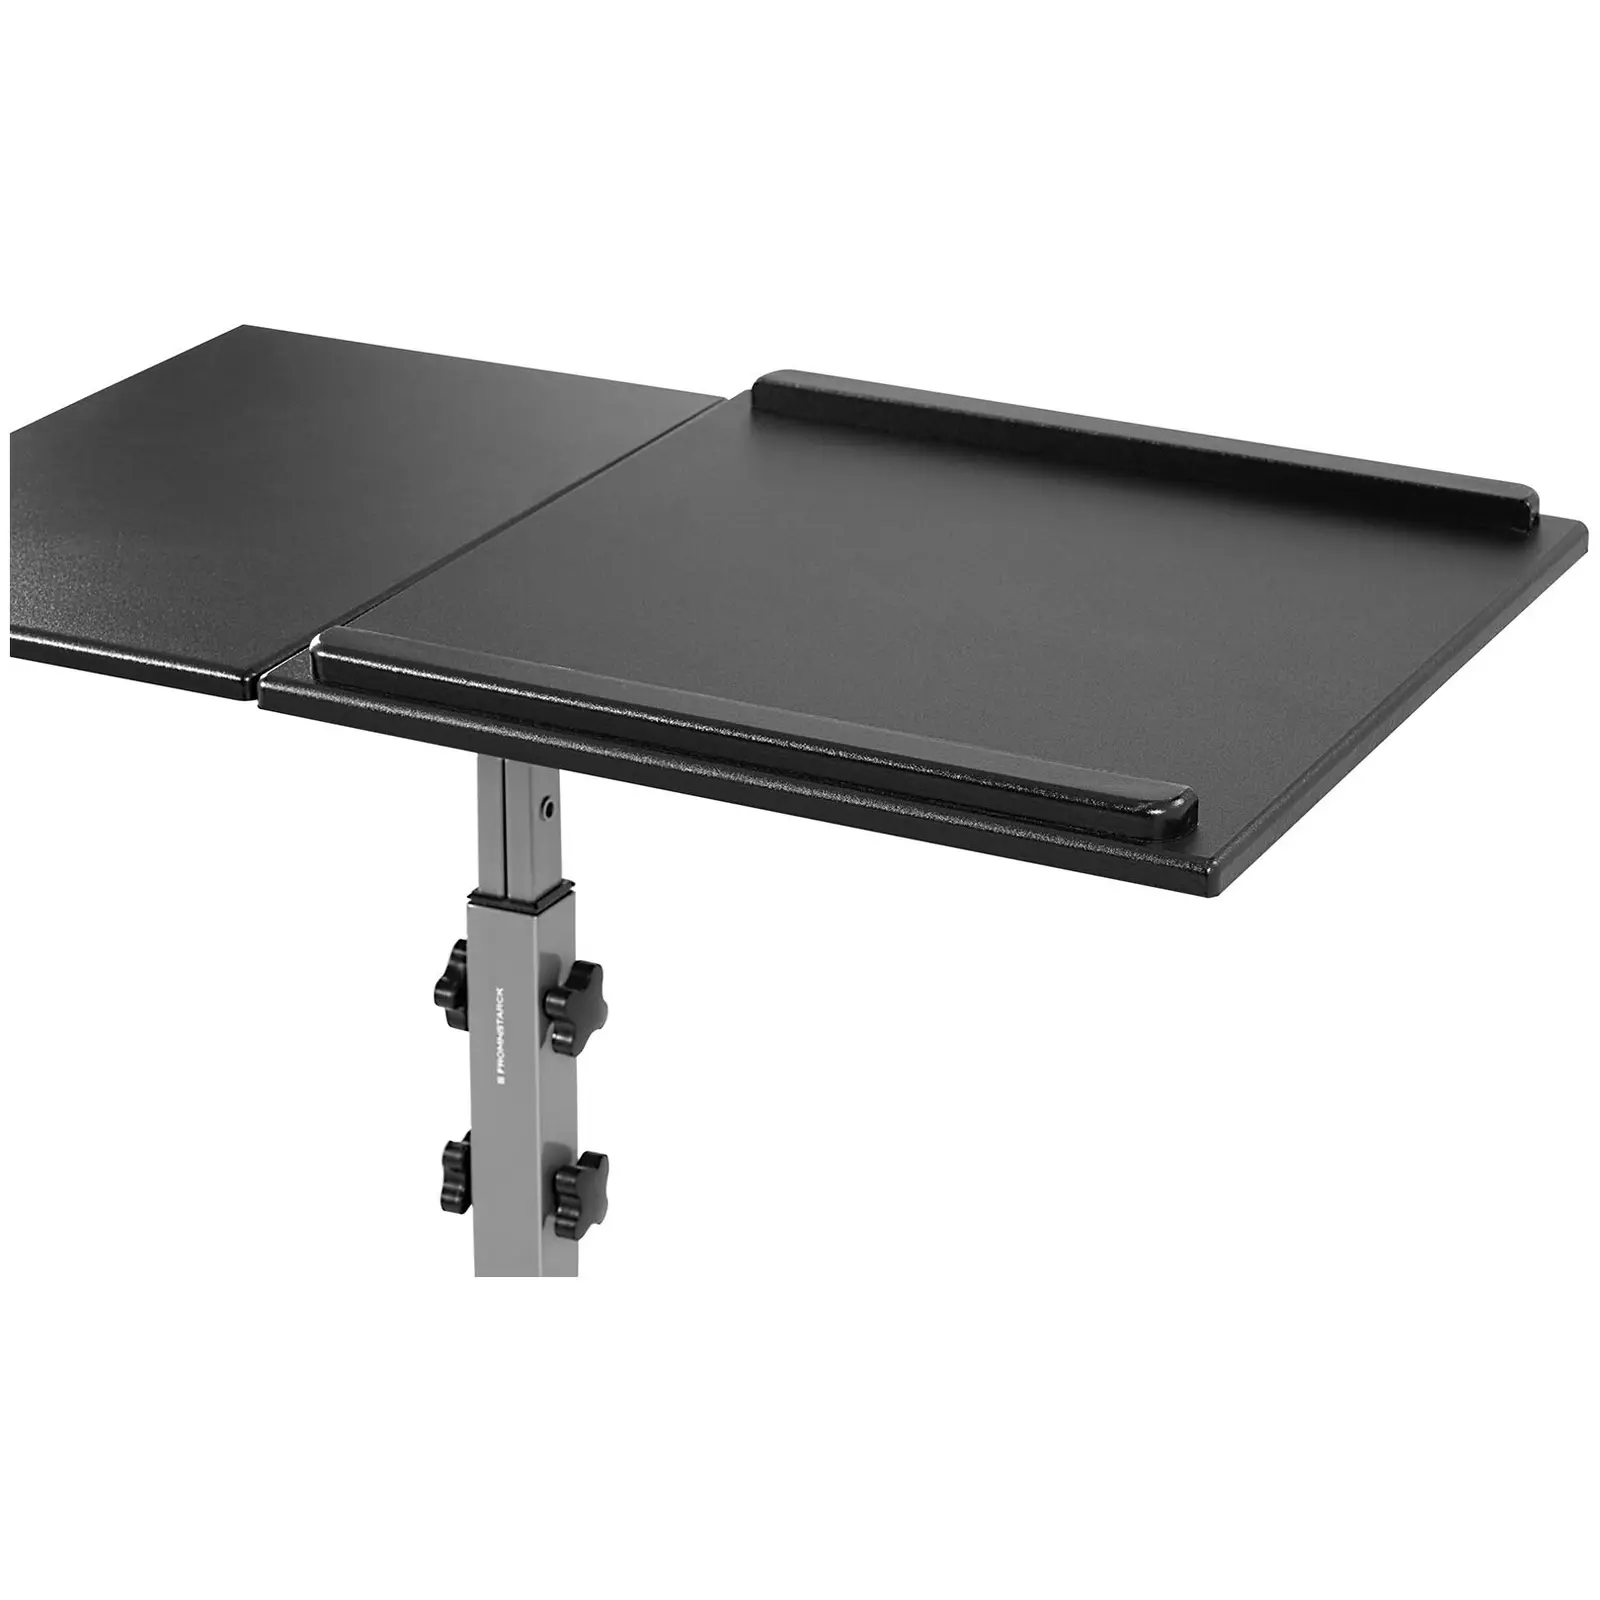 Stolik pod laptopa - 45 x 75 cm - nachylenie -35 - 30° - wysokość: 770-870 mm